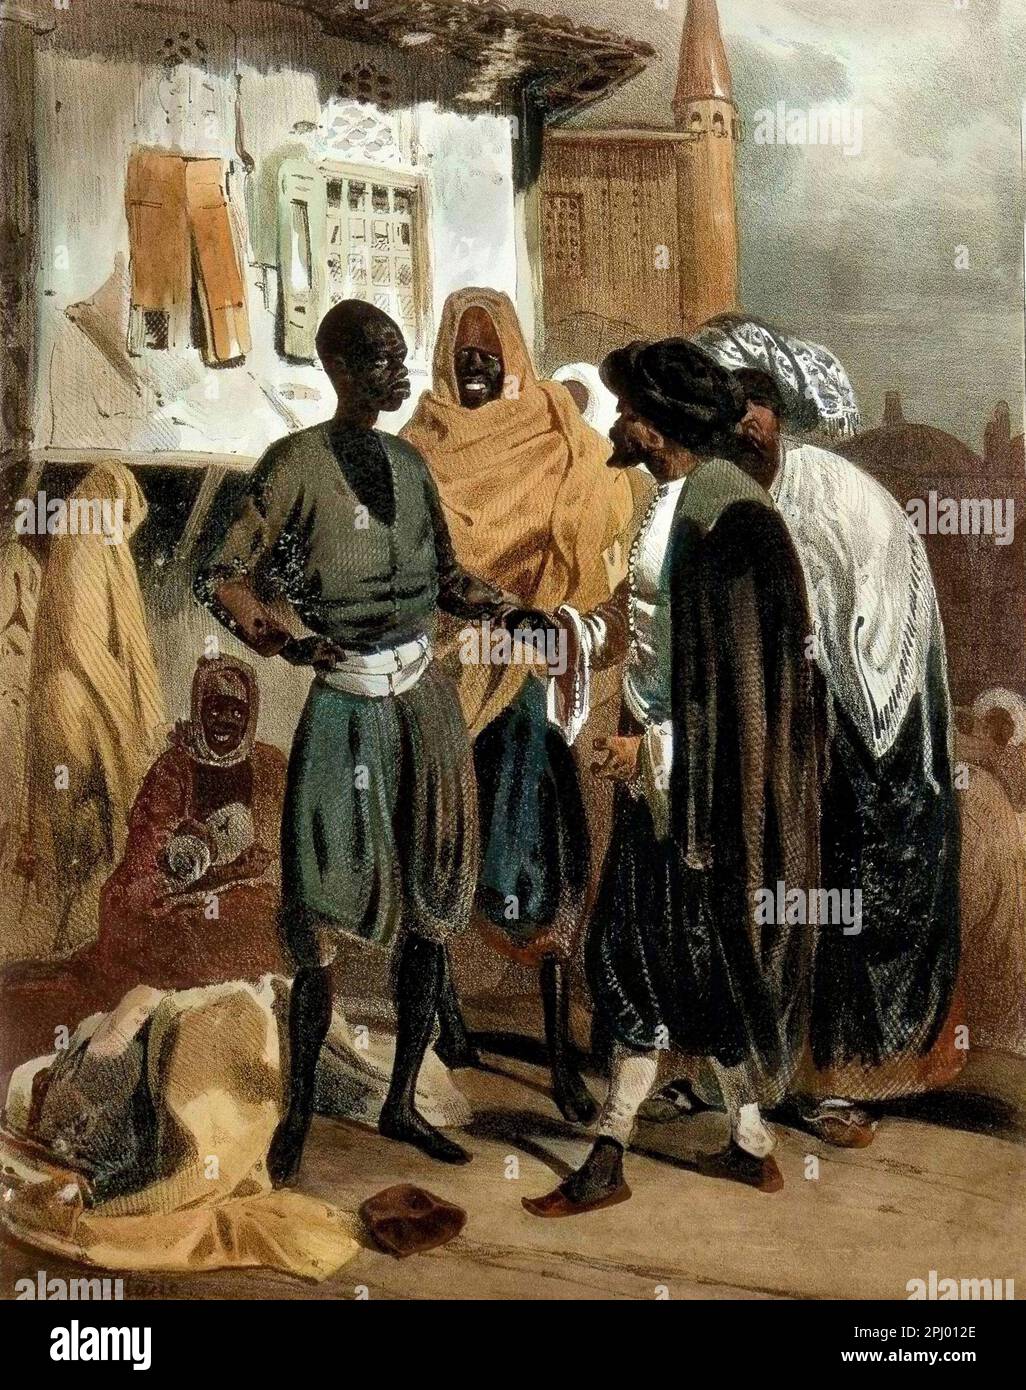 Marché d'esclaves à Ak Hissar en Turquie vers 1830. Dessin de. LeBlanc. - Marché des esclaves à Ak Hissar en Turquie vers 1830 Banque D'Images